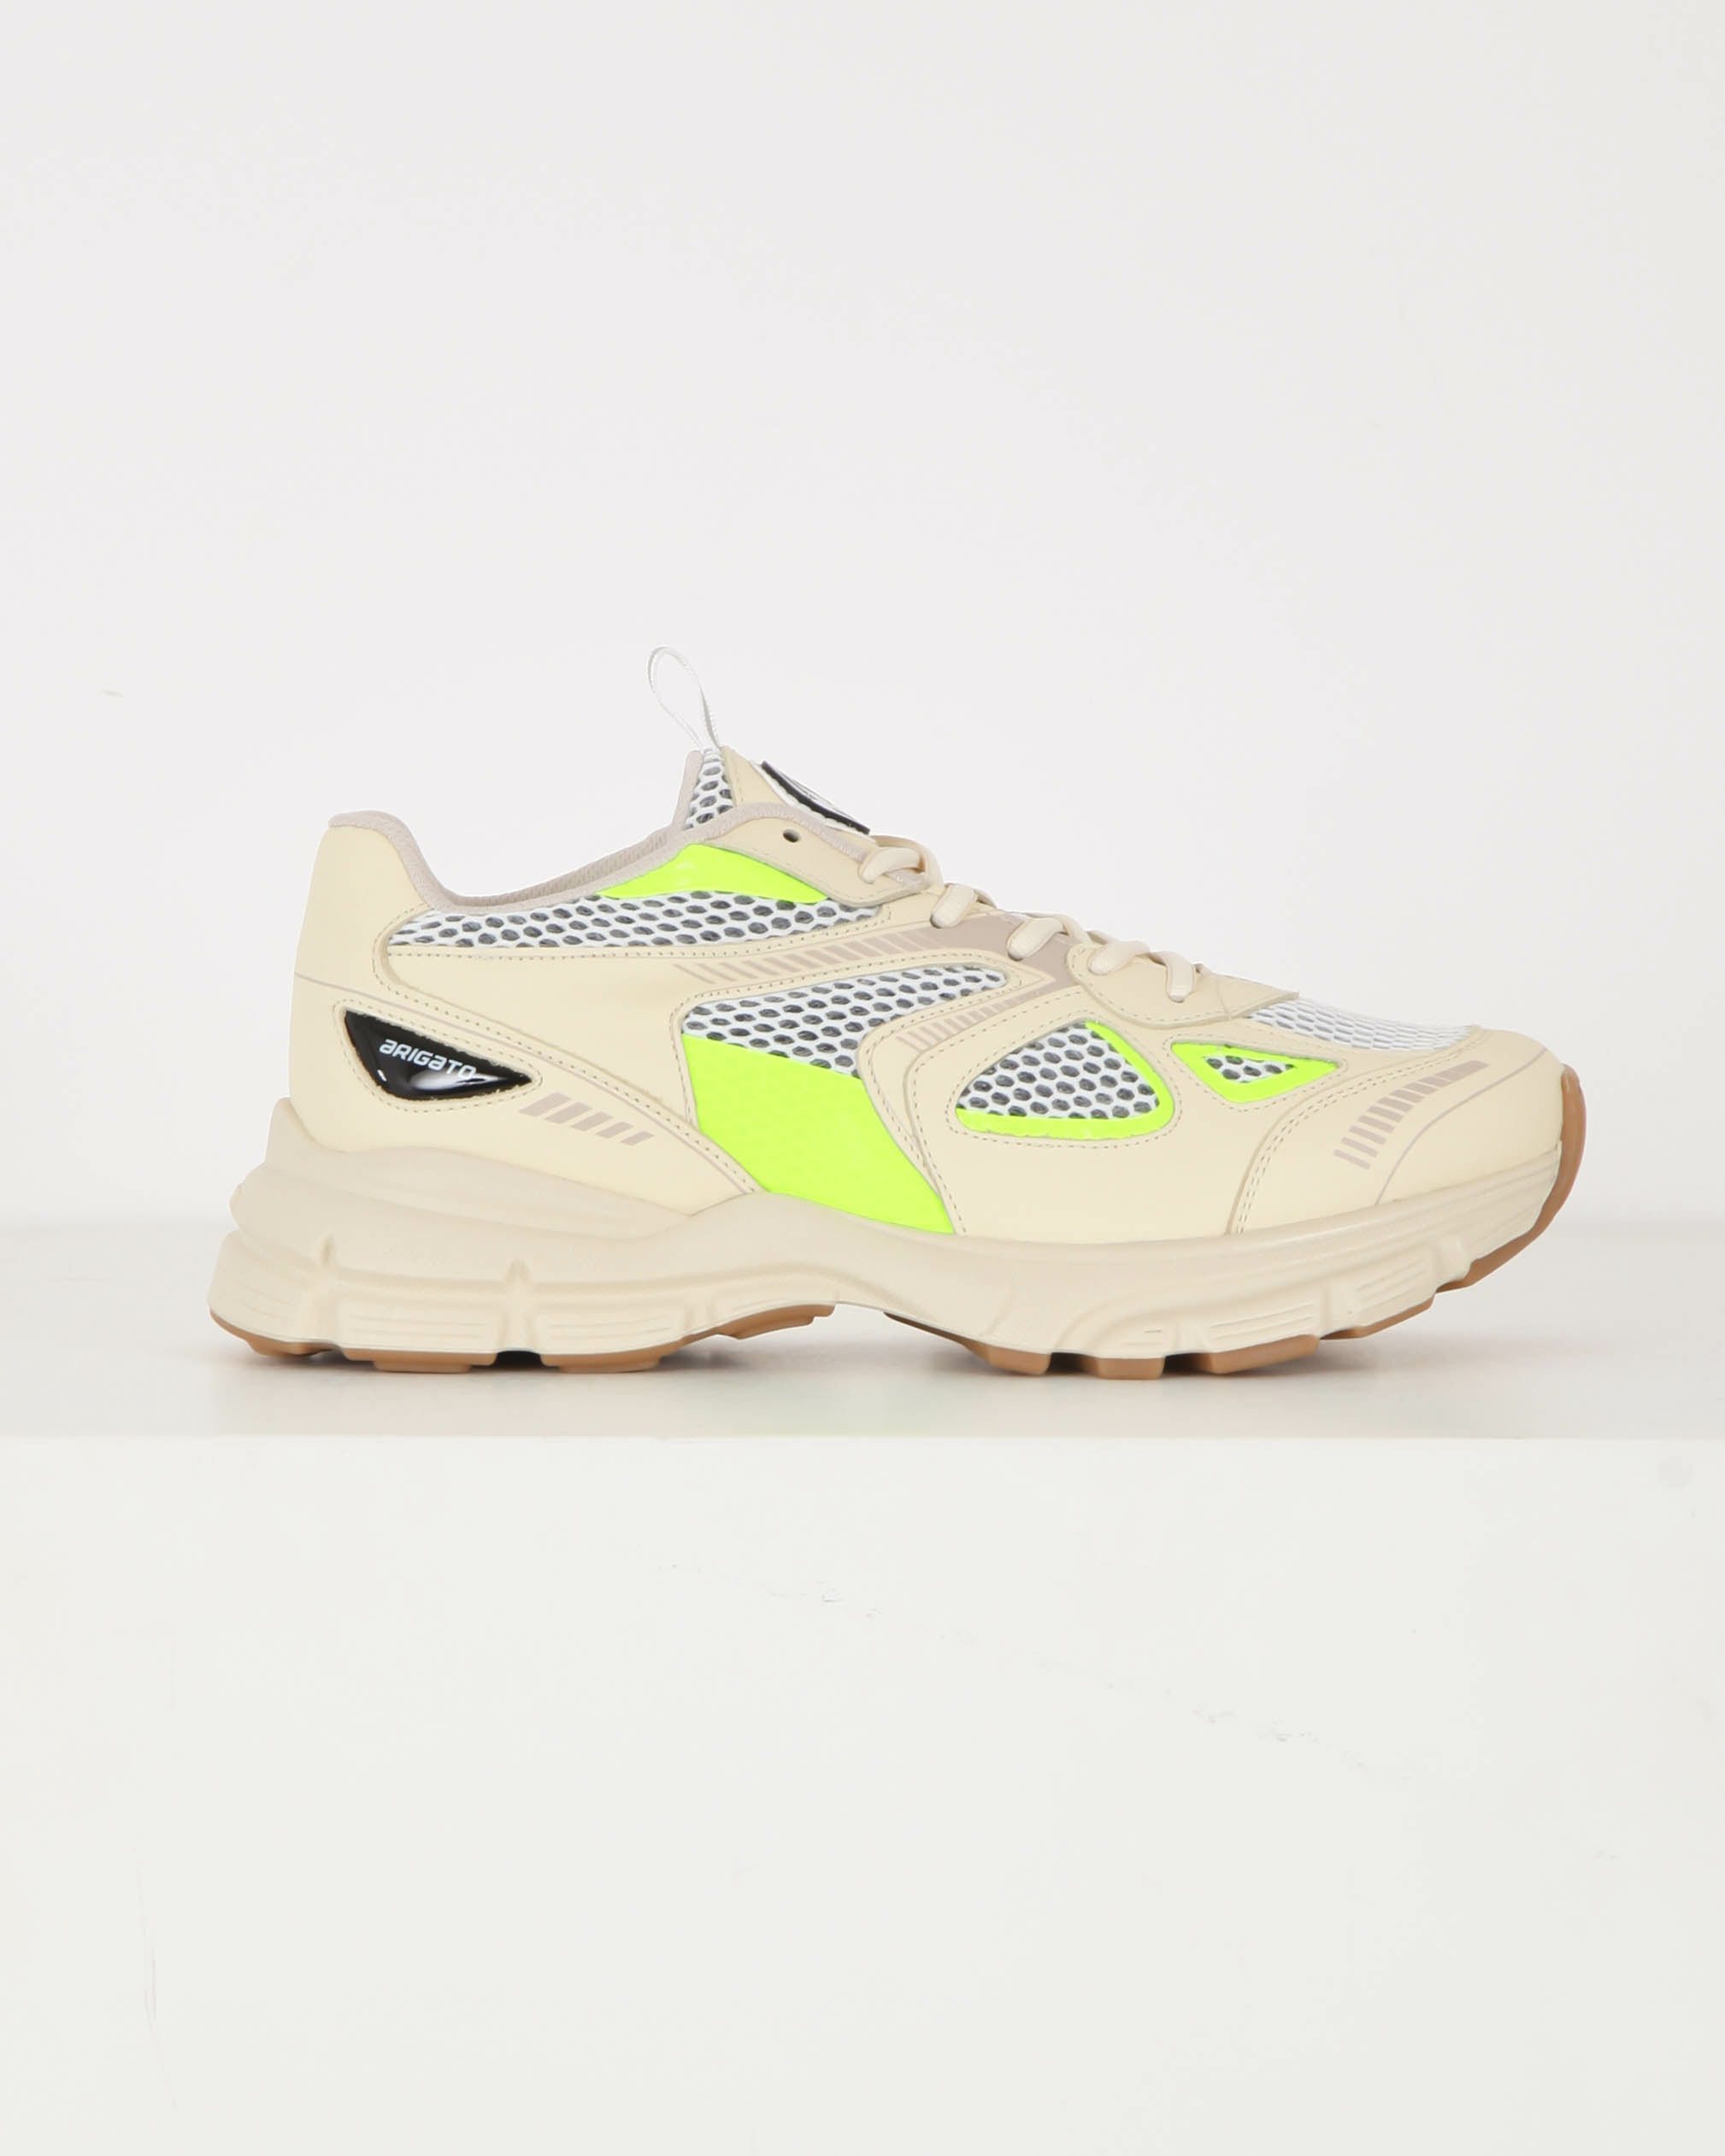 Tact gelei Klas Sneakers Marathon Runner Yellow Neon